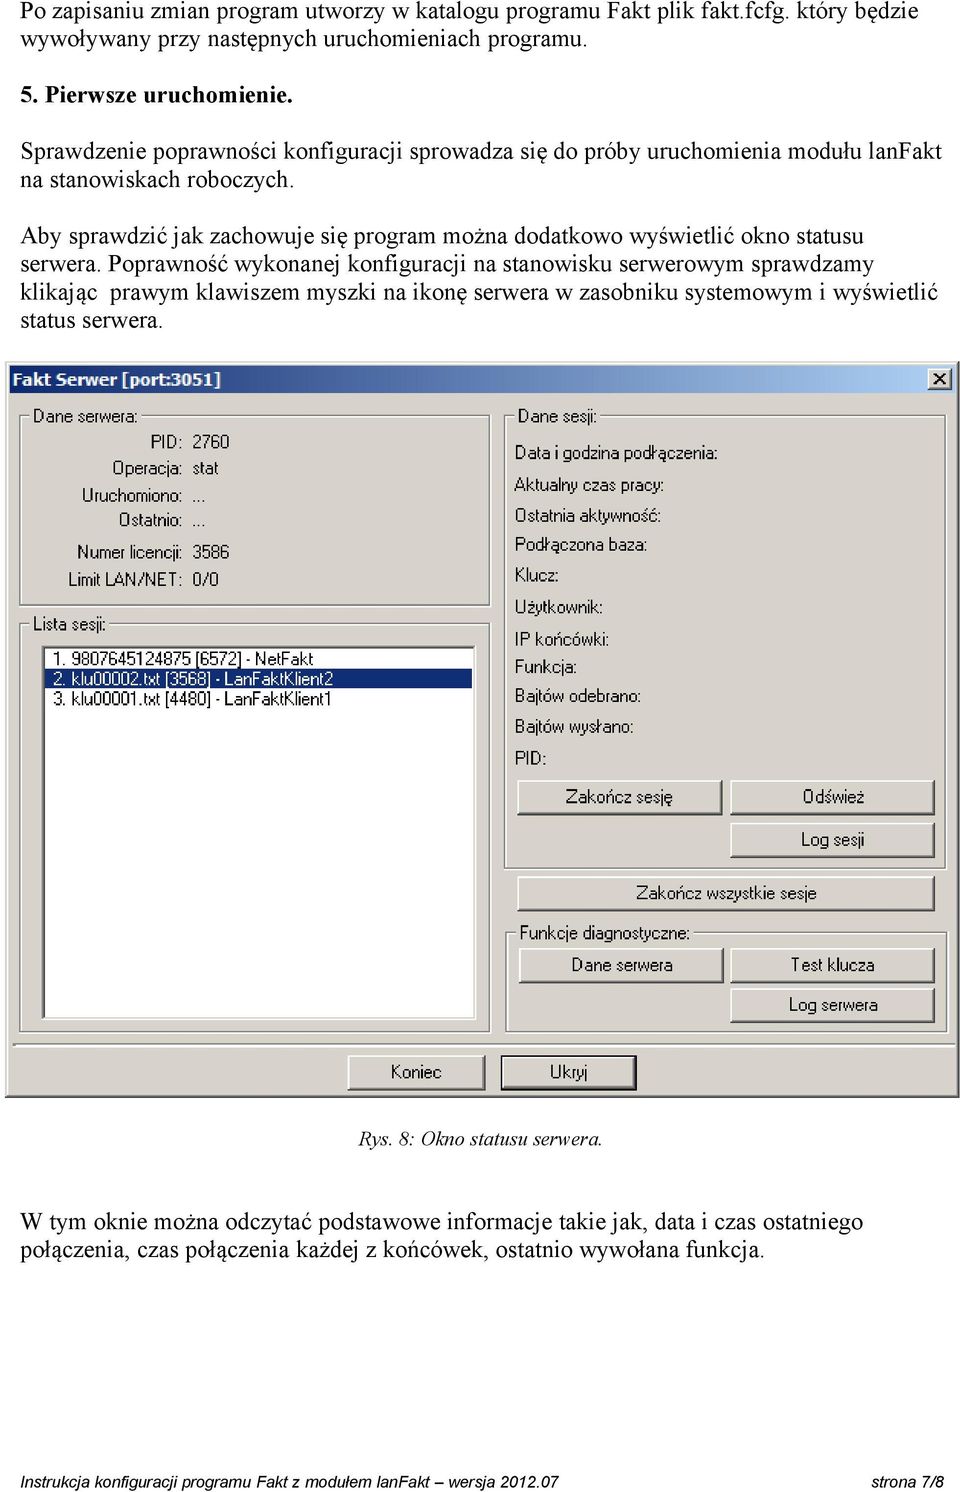 Aby sprawdzić jak zachowuje się program można dodatkowo wyświetlić okno statusu serwera.